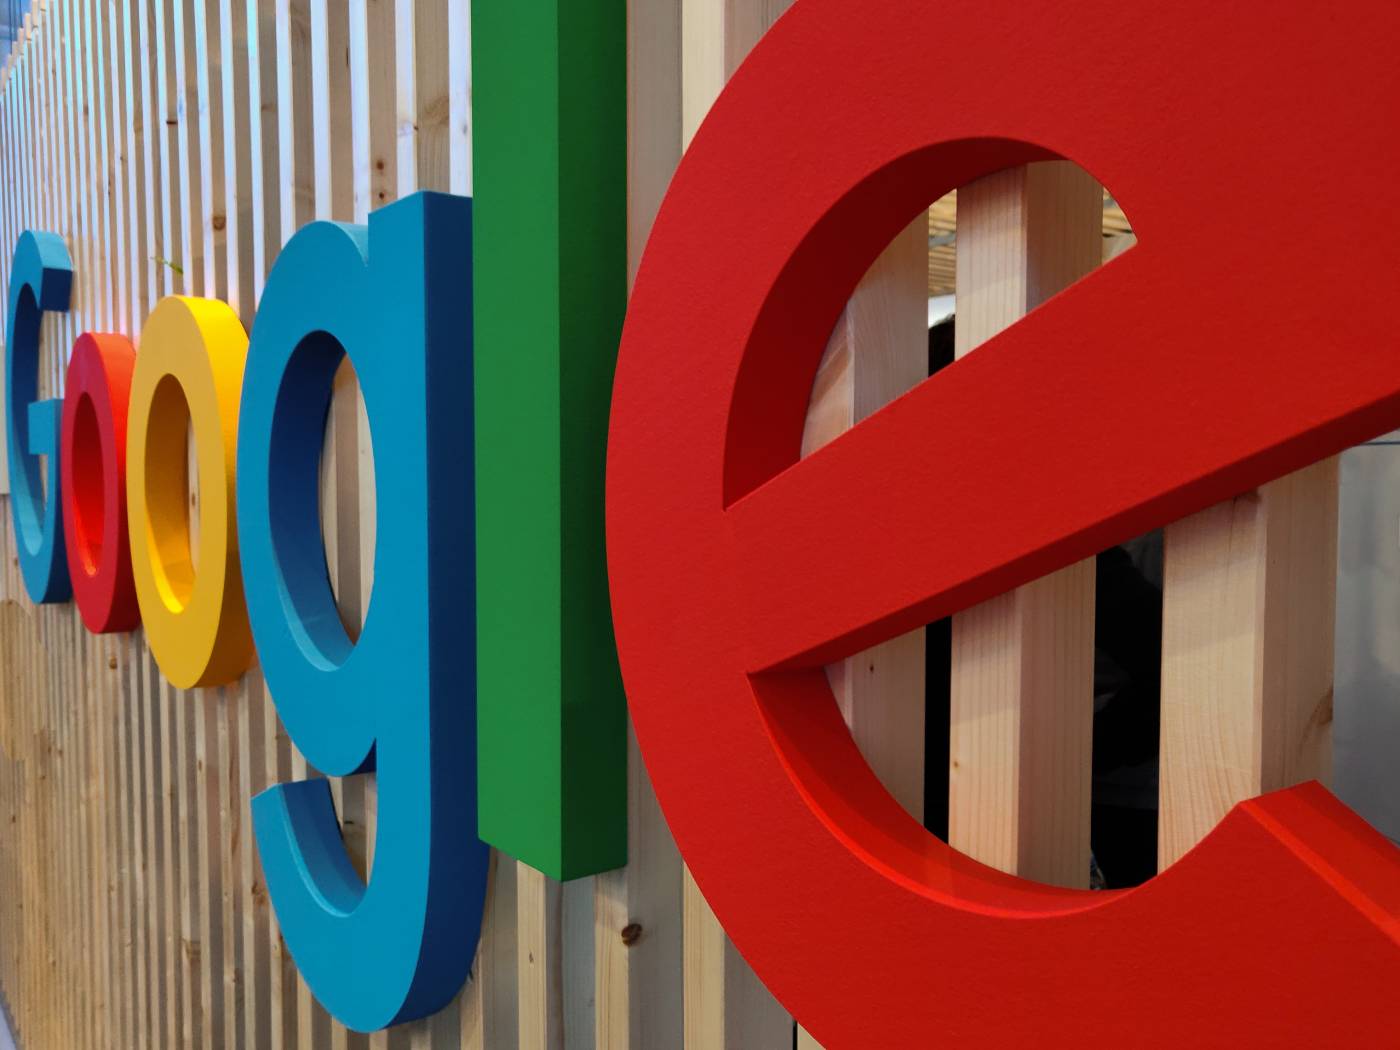 Le logo de Google sur la devanture d'un édifice en bois.